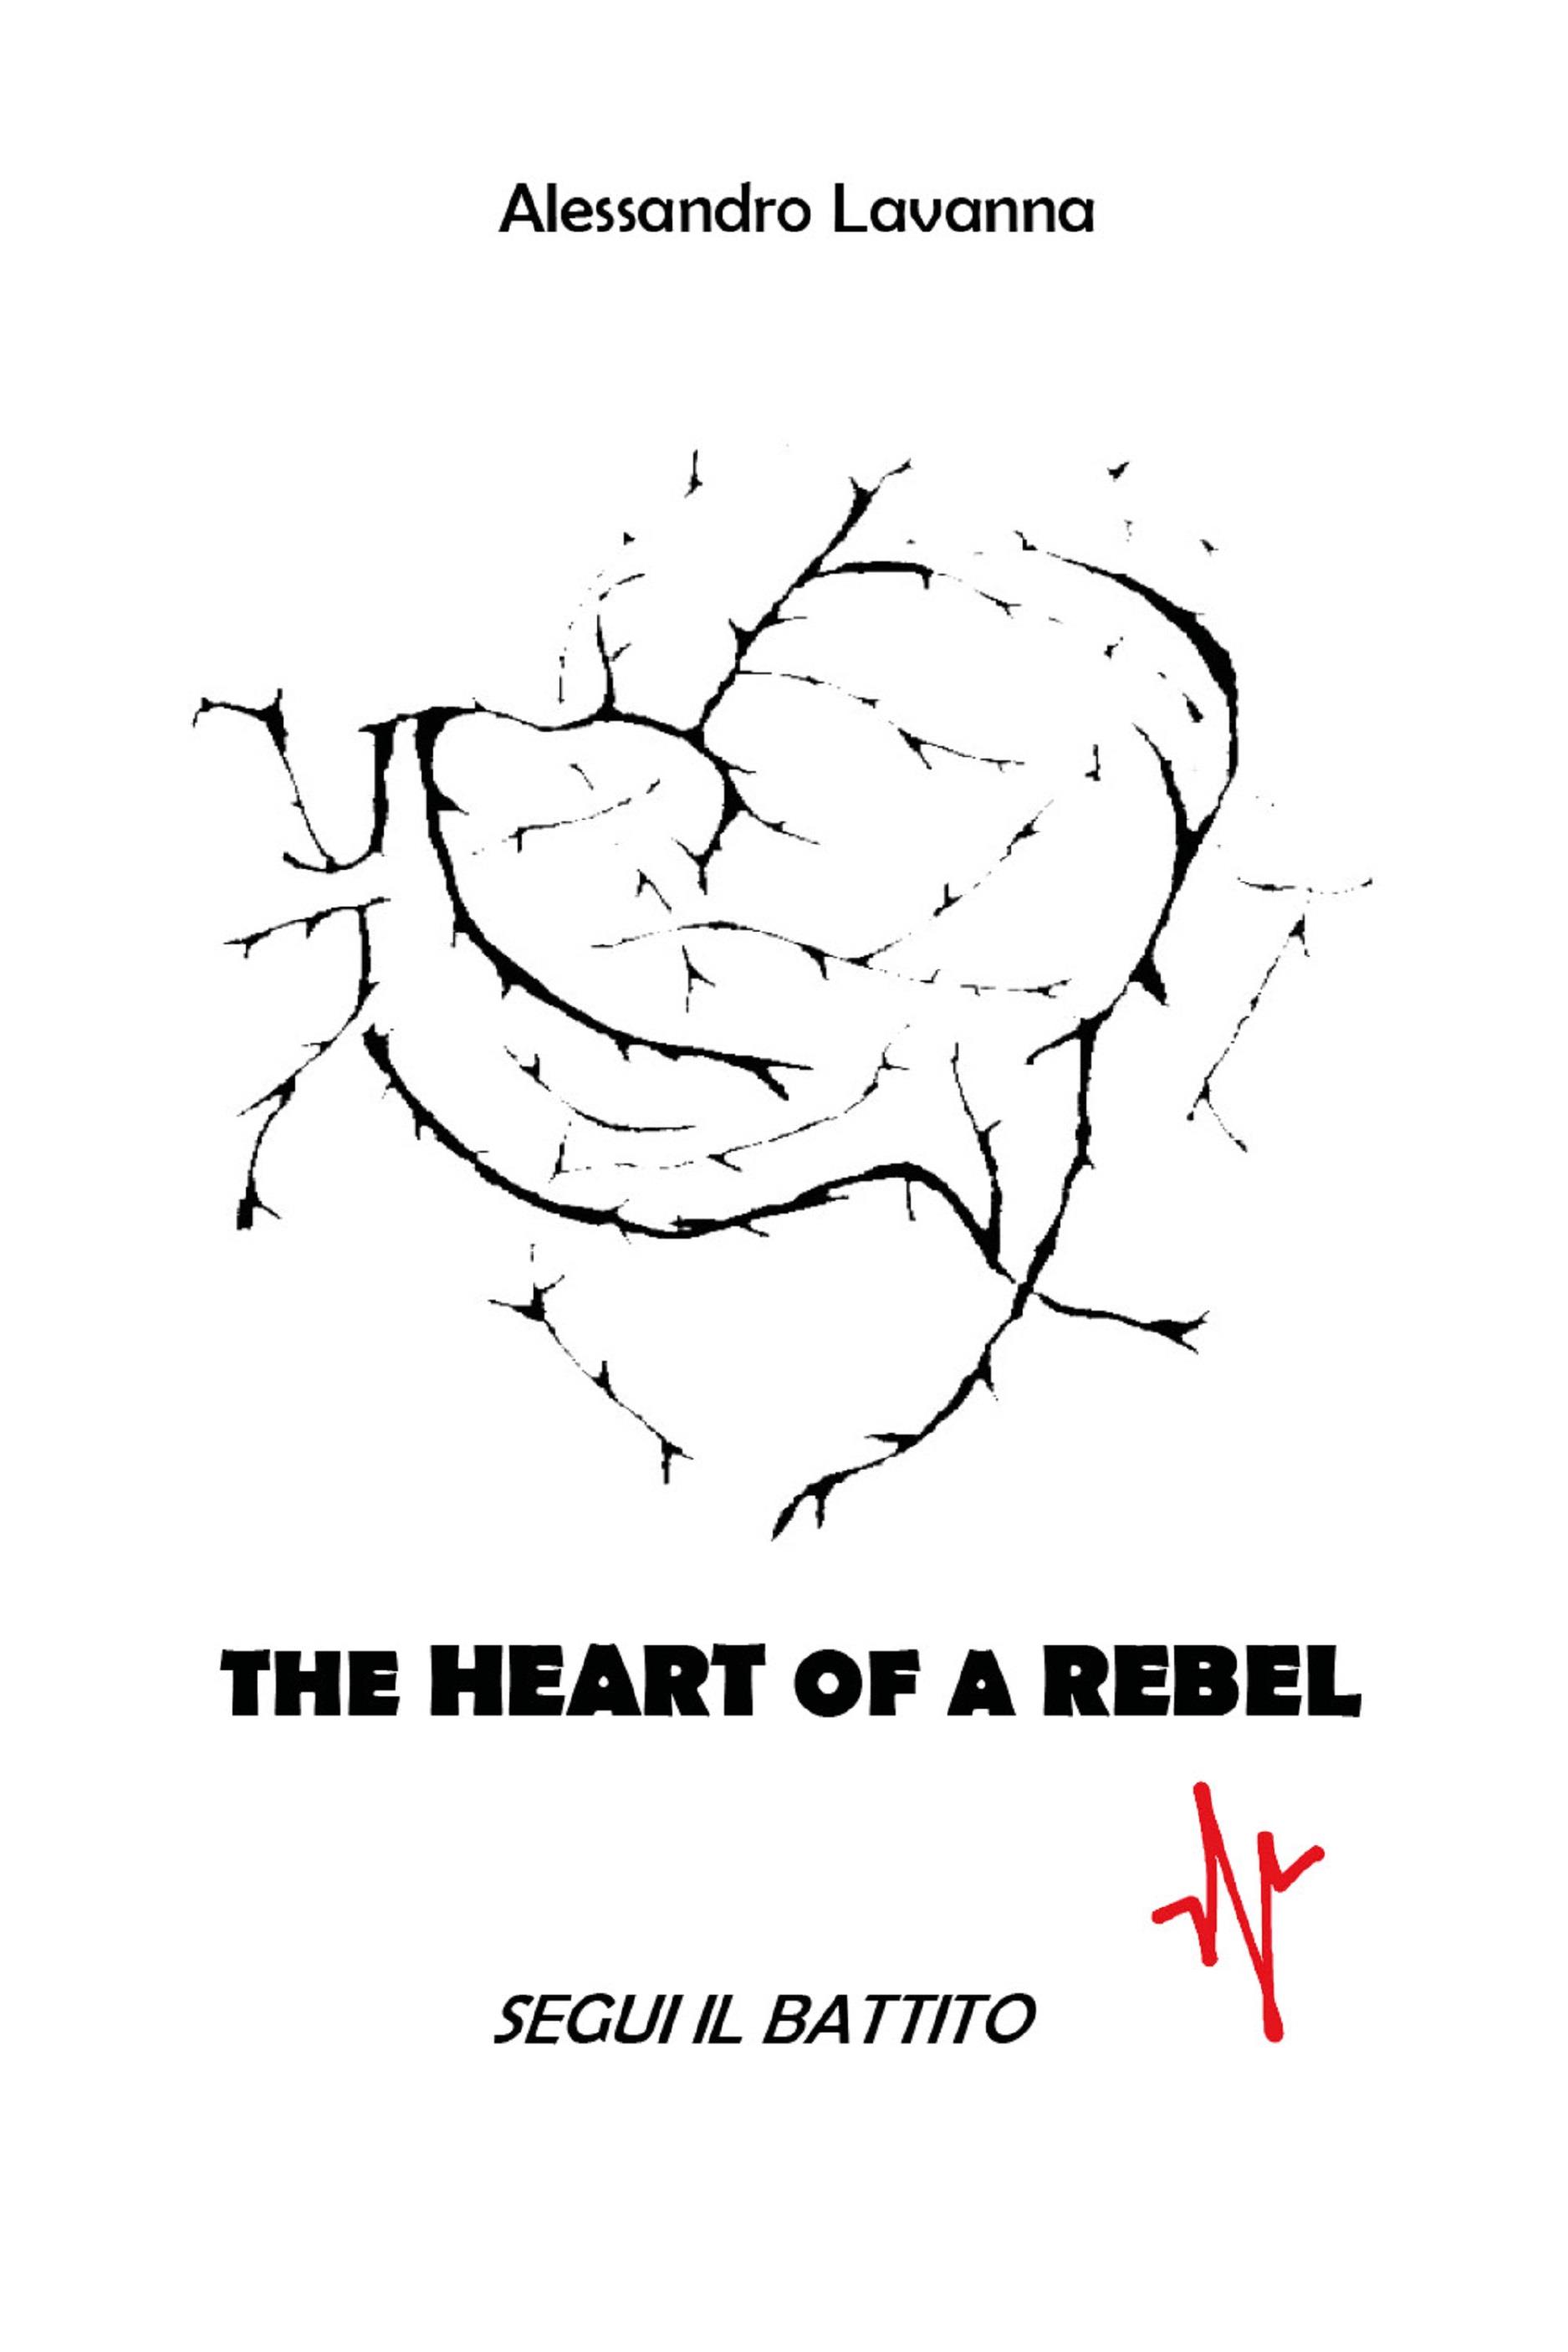 The Heart of a Rebel - segui il battito